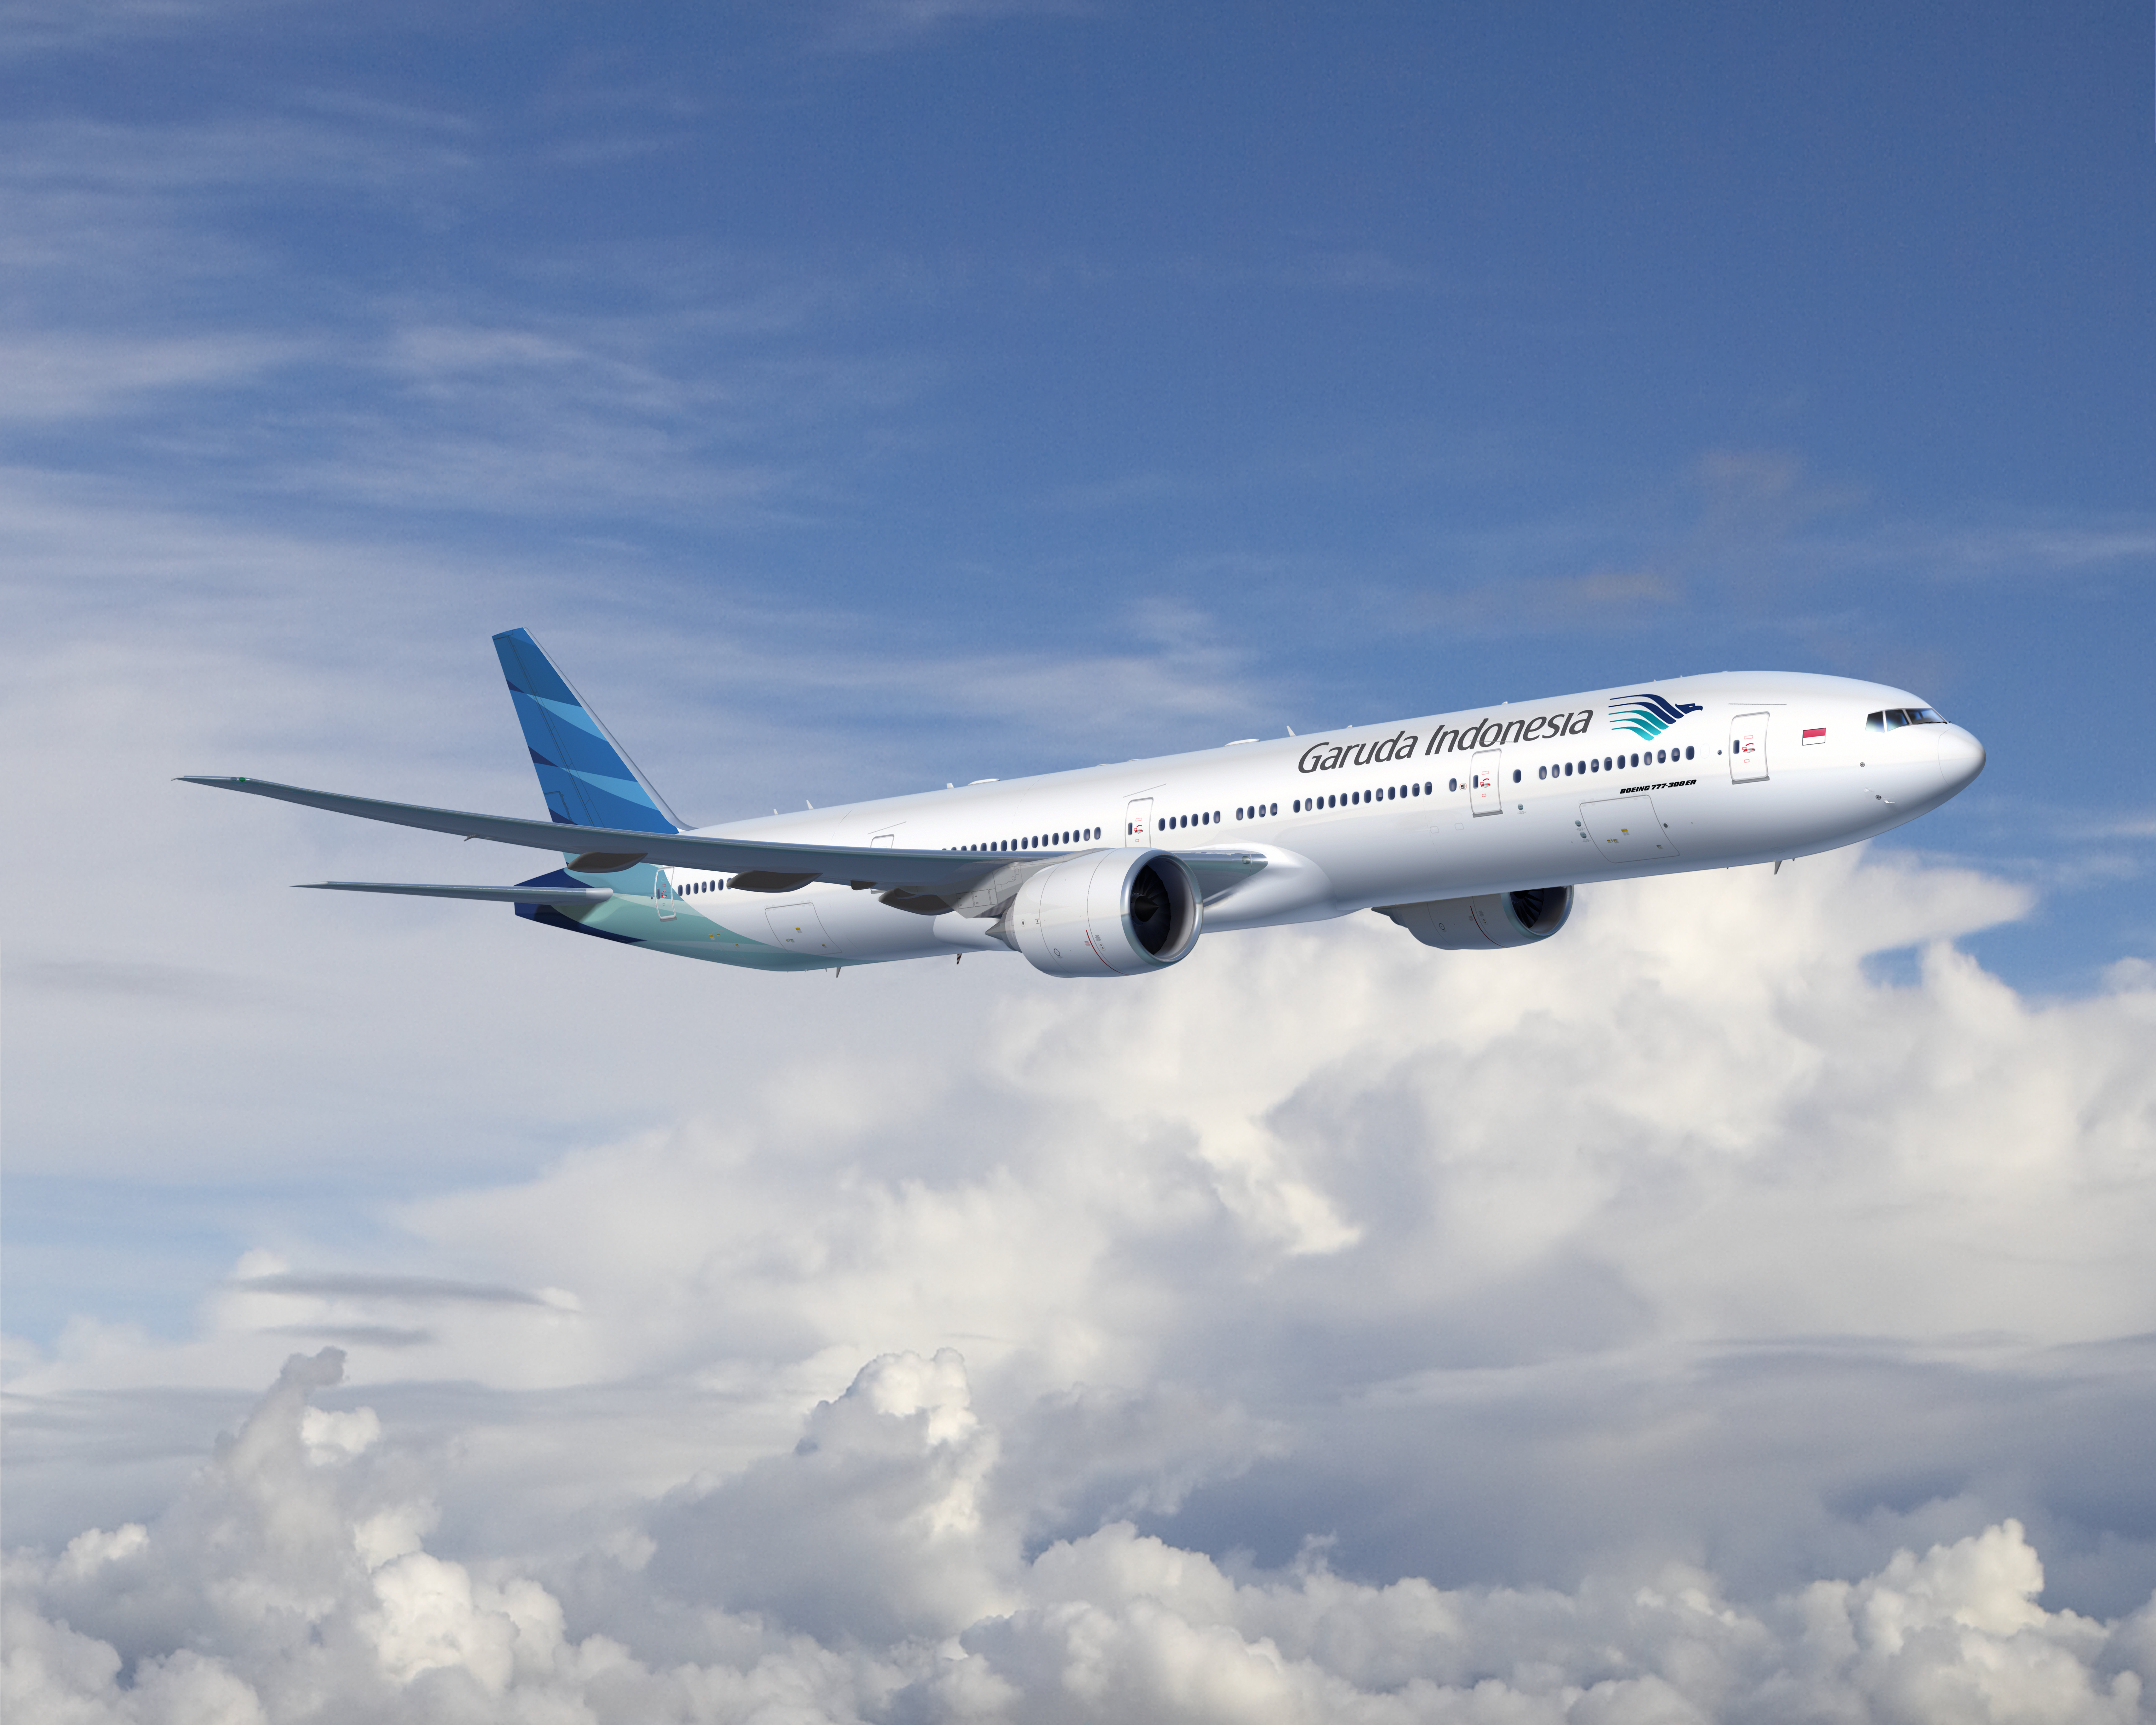 ついにバリ島旅行再開 2年半ぶりに11 月1日よりガルーダ インドネシア航空が成田空港ーデンパサール空港の直行便運航を開始 国際開発株式会社のプレスリリース